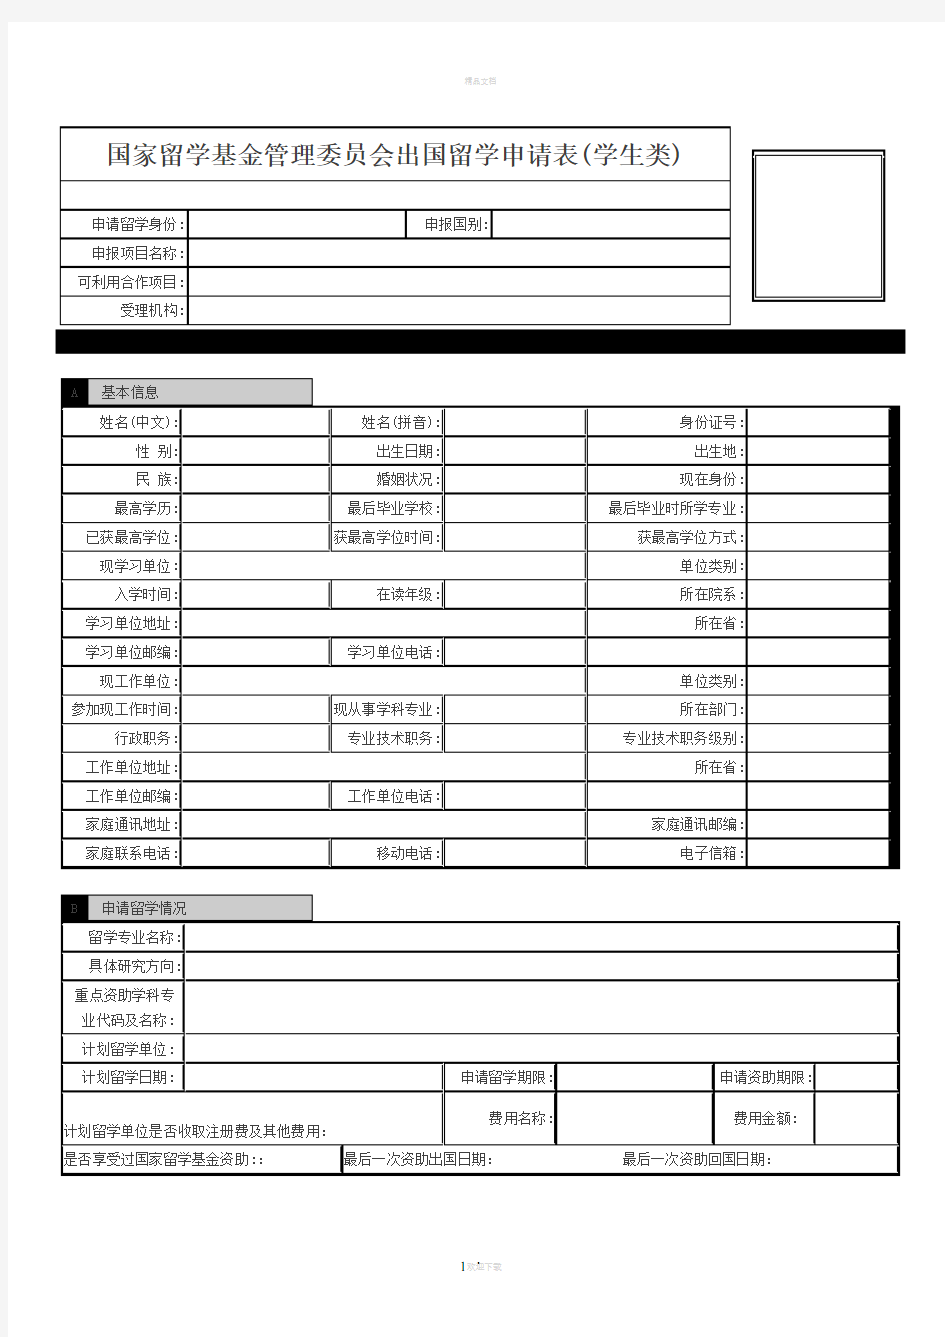 上海外国语大学-年度公派出国留学项目申请推荐表(研究生类)